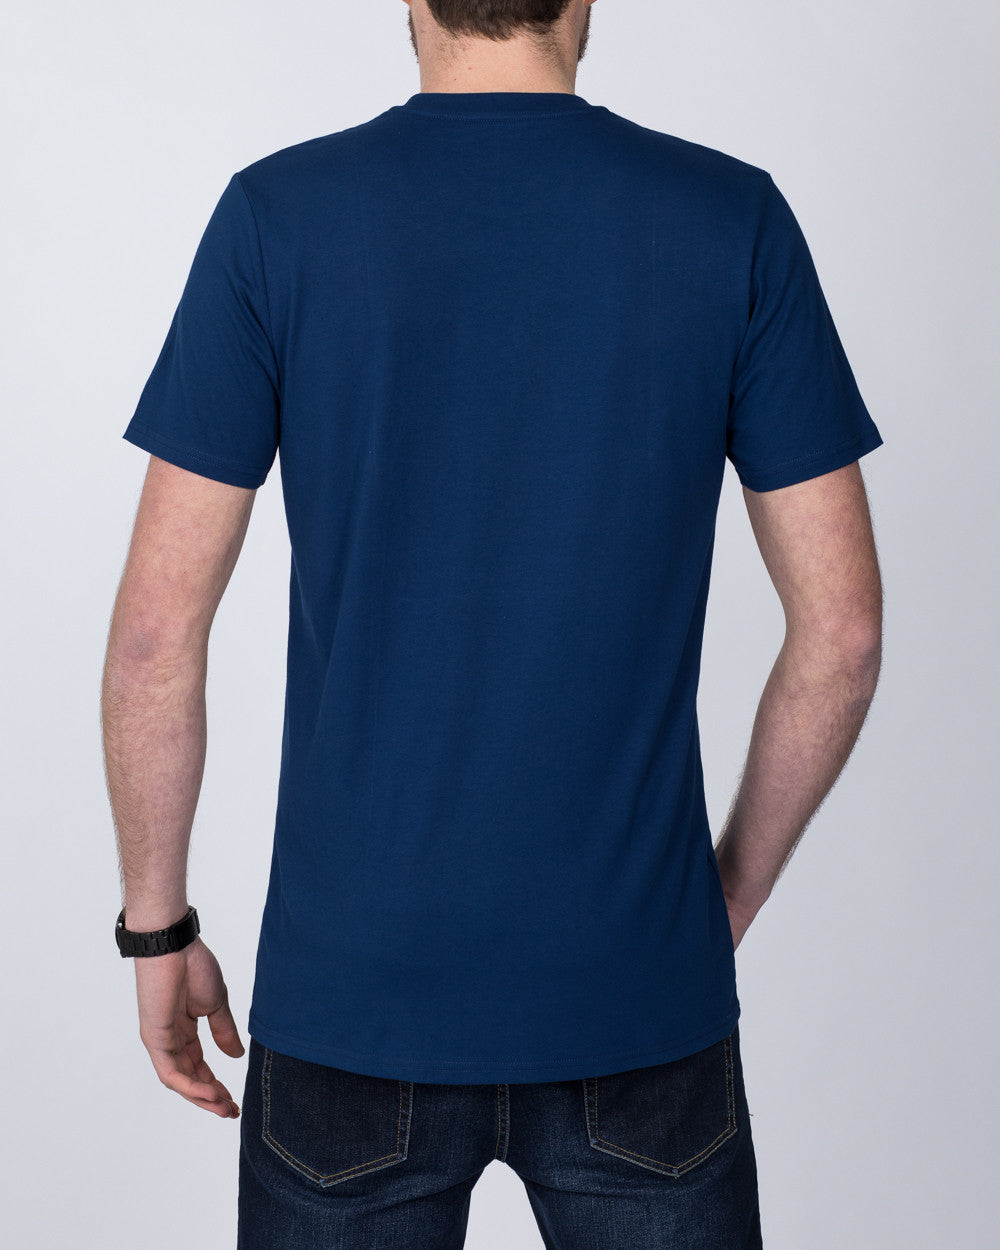 Girav Sydney Tall T-Shirt (estate blue)